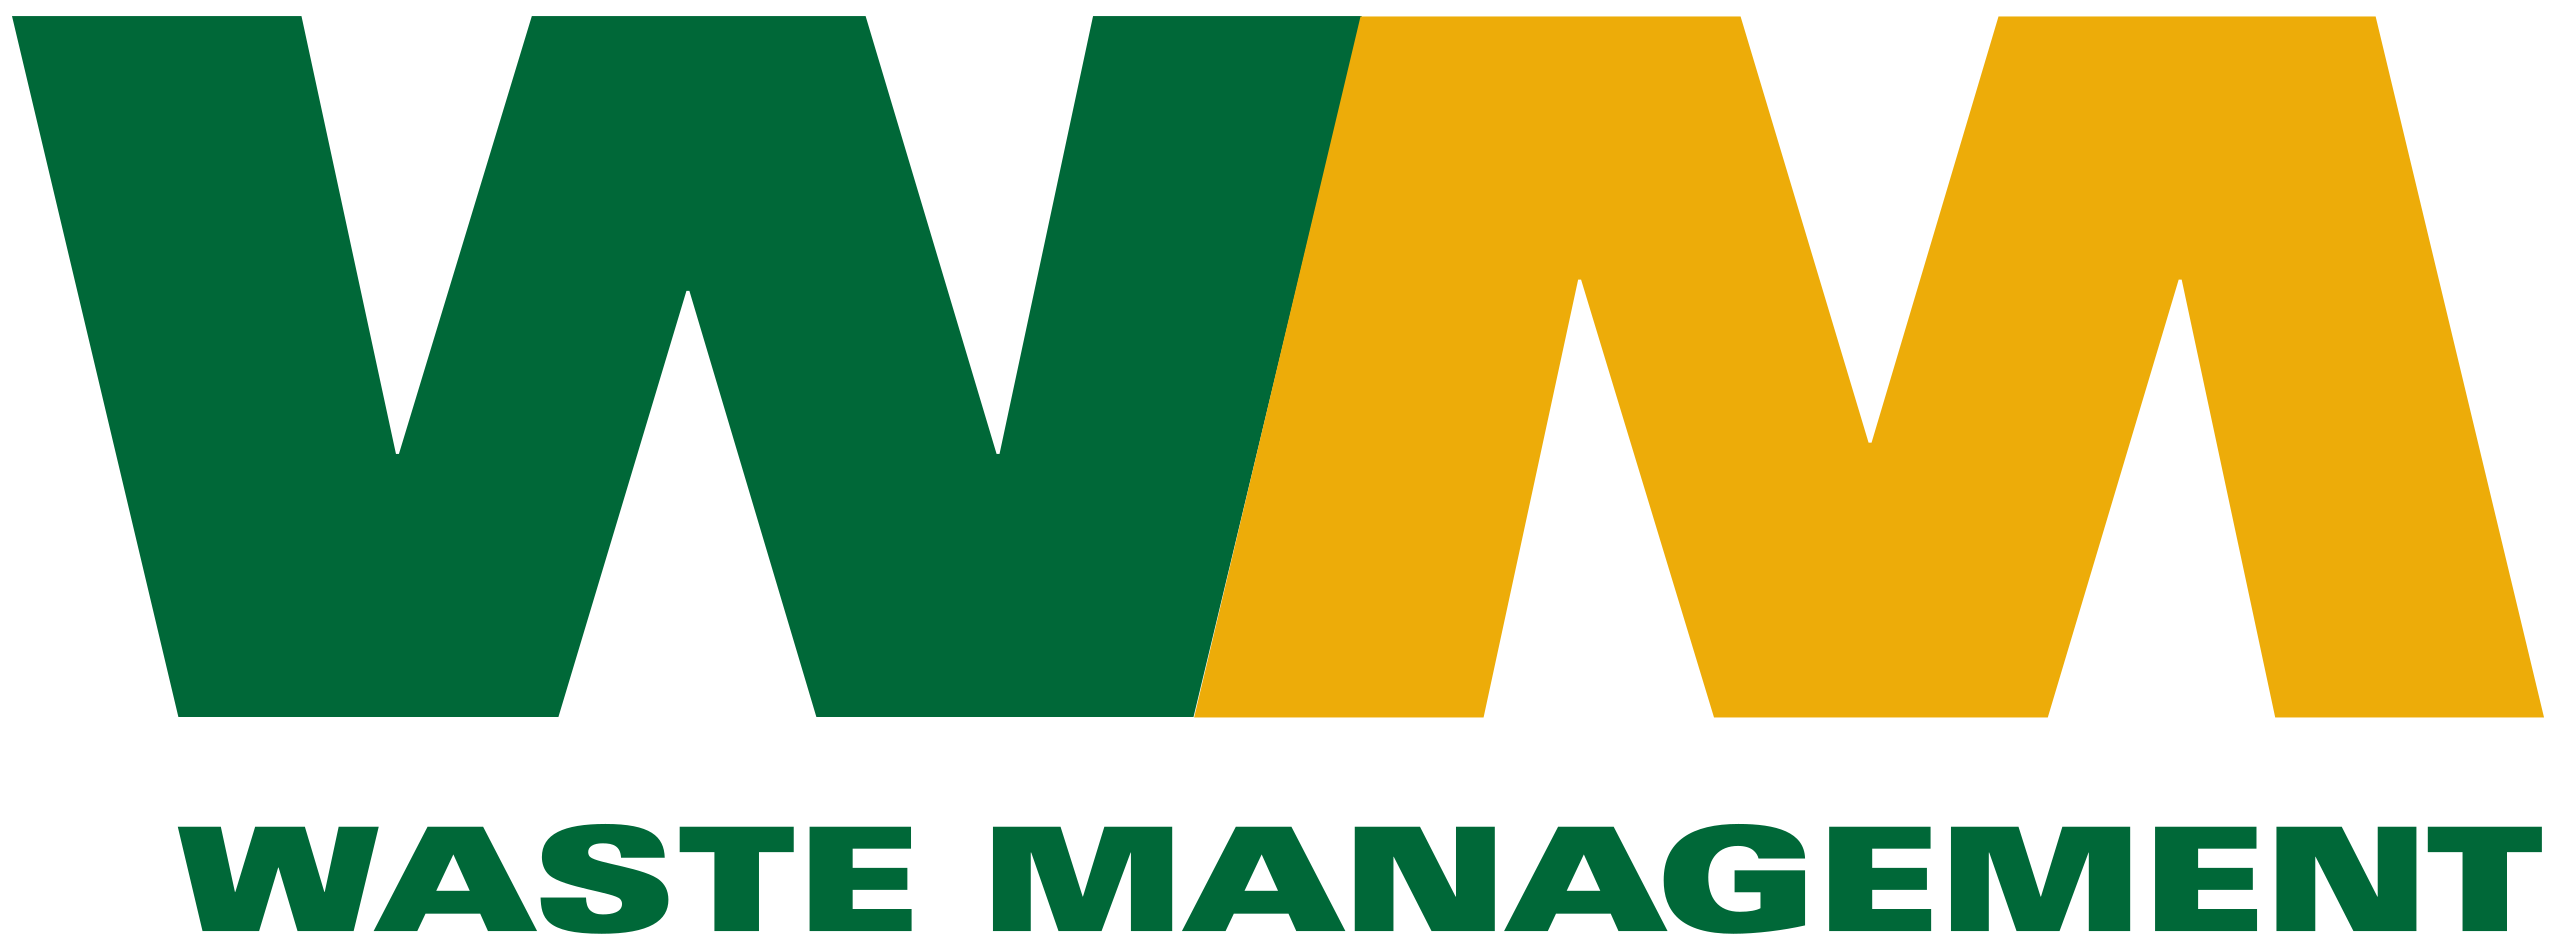 Waste_Management_logo.svg